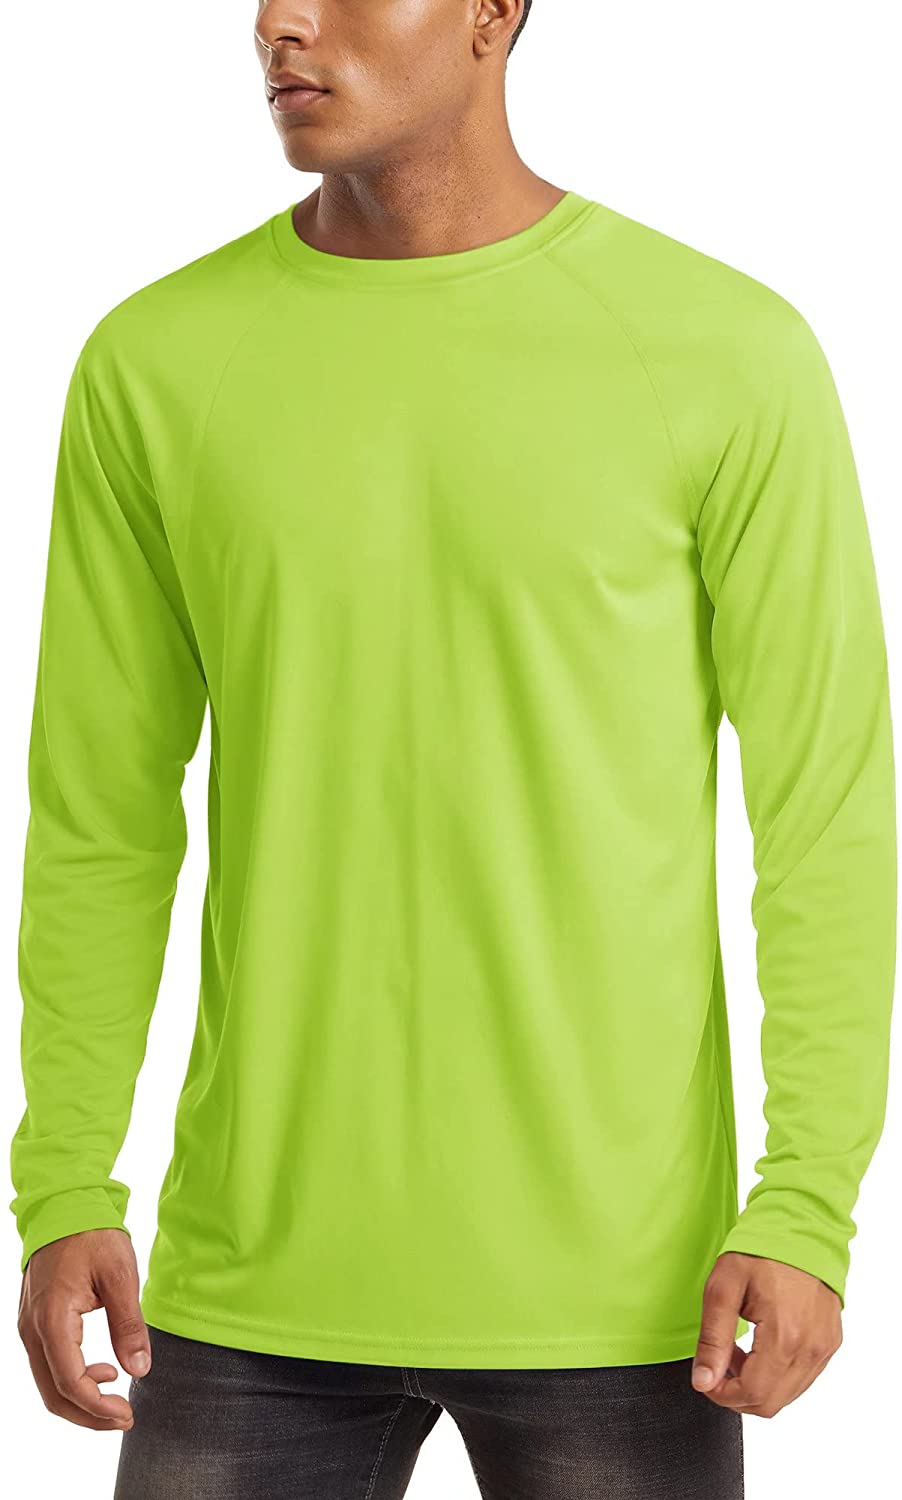 UV Long Sleeve Moisture Wicking Performance Athletic Shirt MAGCOMSEN Men's Sun Protection T-Shirt UPF 50 